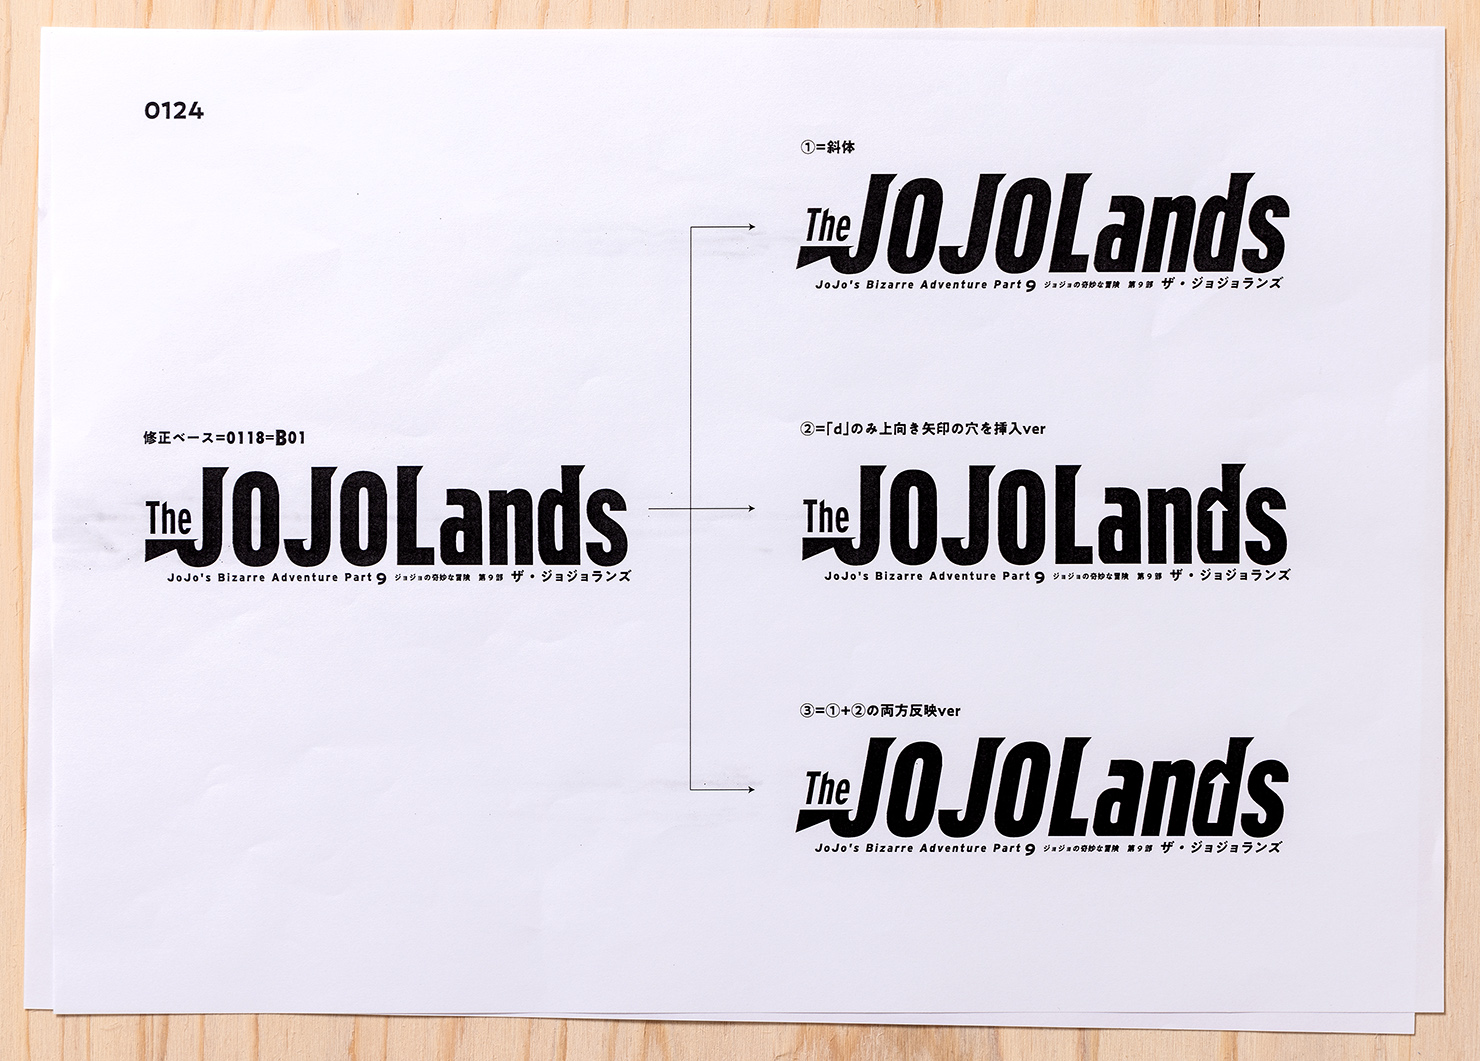 『ジョジョの奇妙な冒険 第9部 The JOJOLands』（ザ・ジョジョランズ） ロゴの最終稿の資料